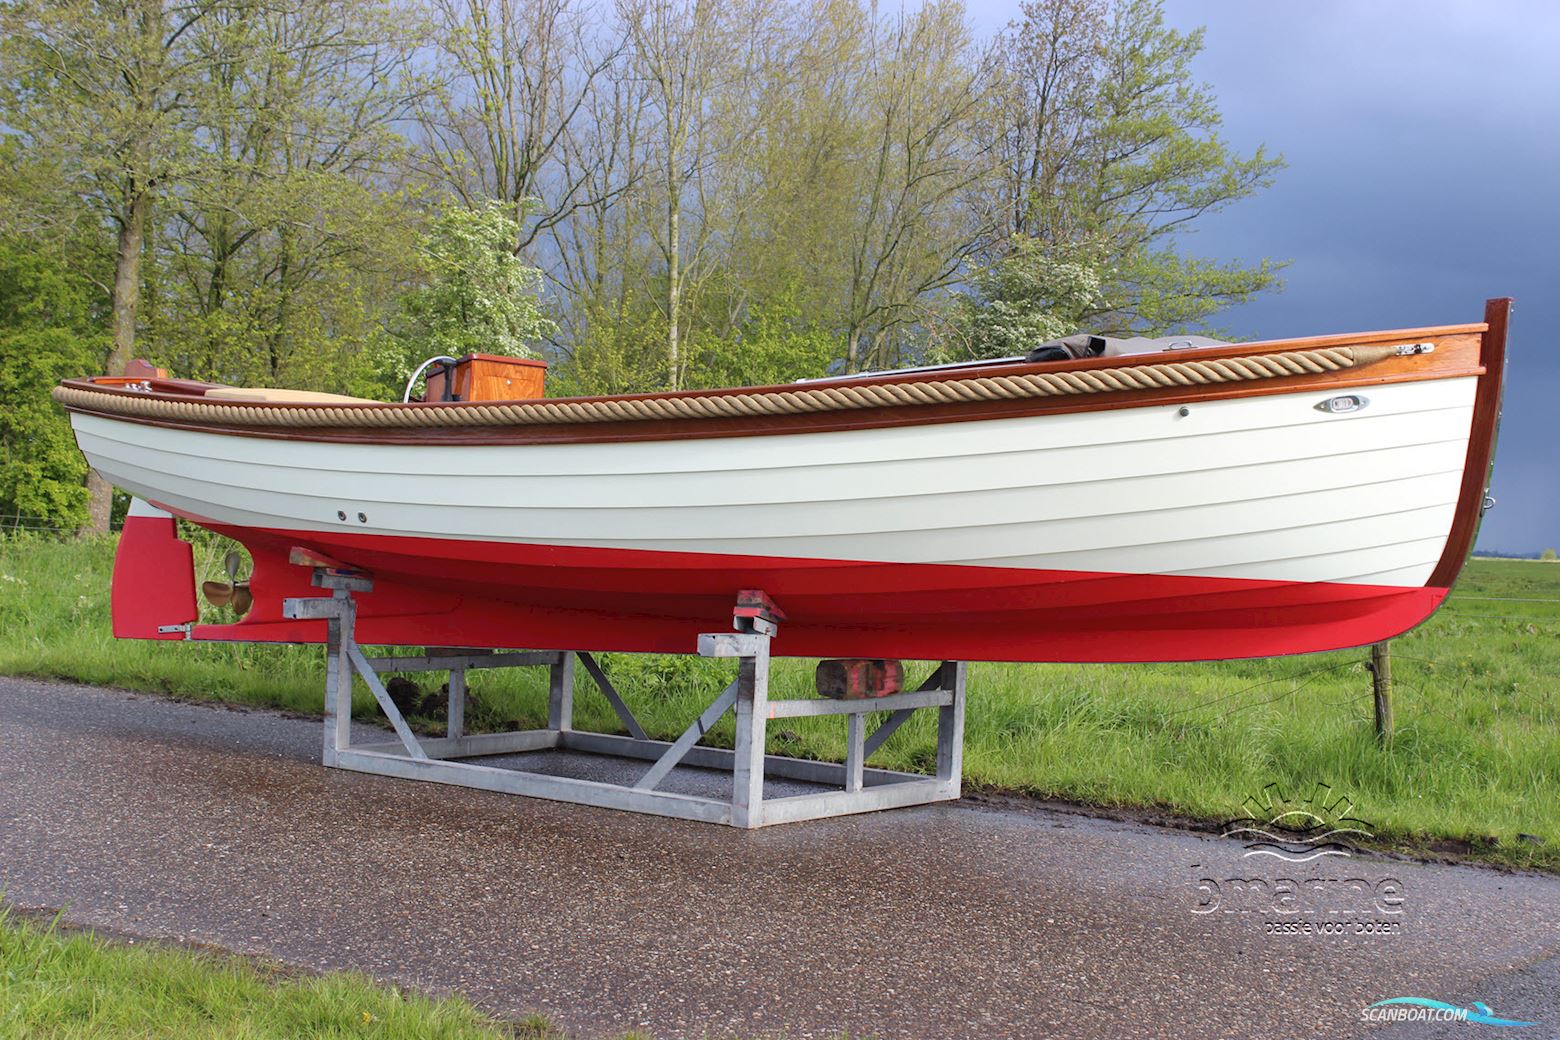 Spiegel Sloep 6.75 Motorboot 2022, mit Nanni motor, Niederlande